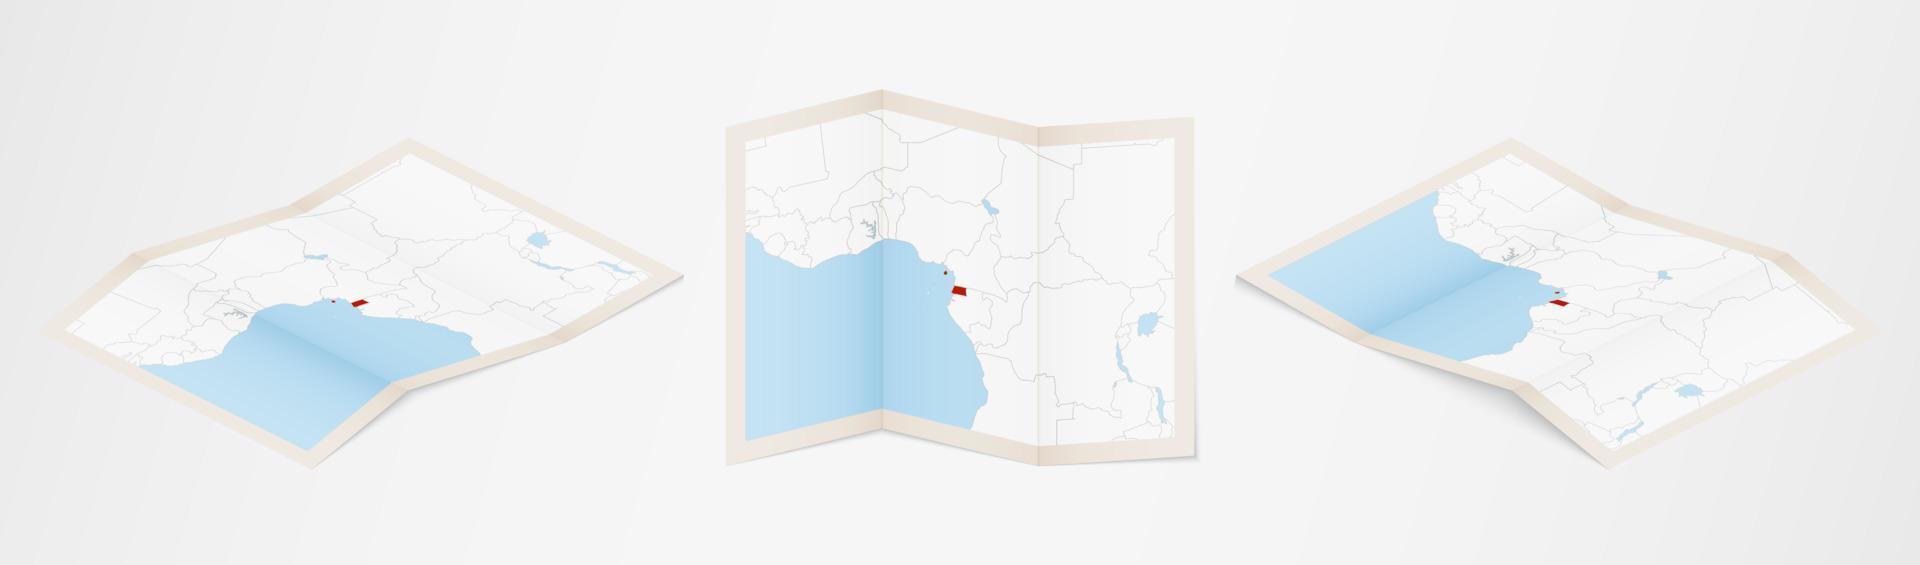 Faltkarte von Äquatorialguinea in drei verschiedenen Versionen. vektor